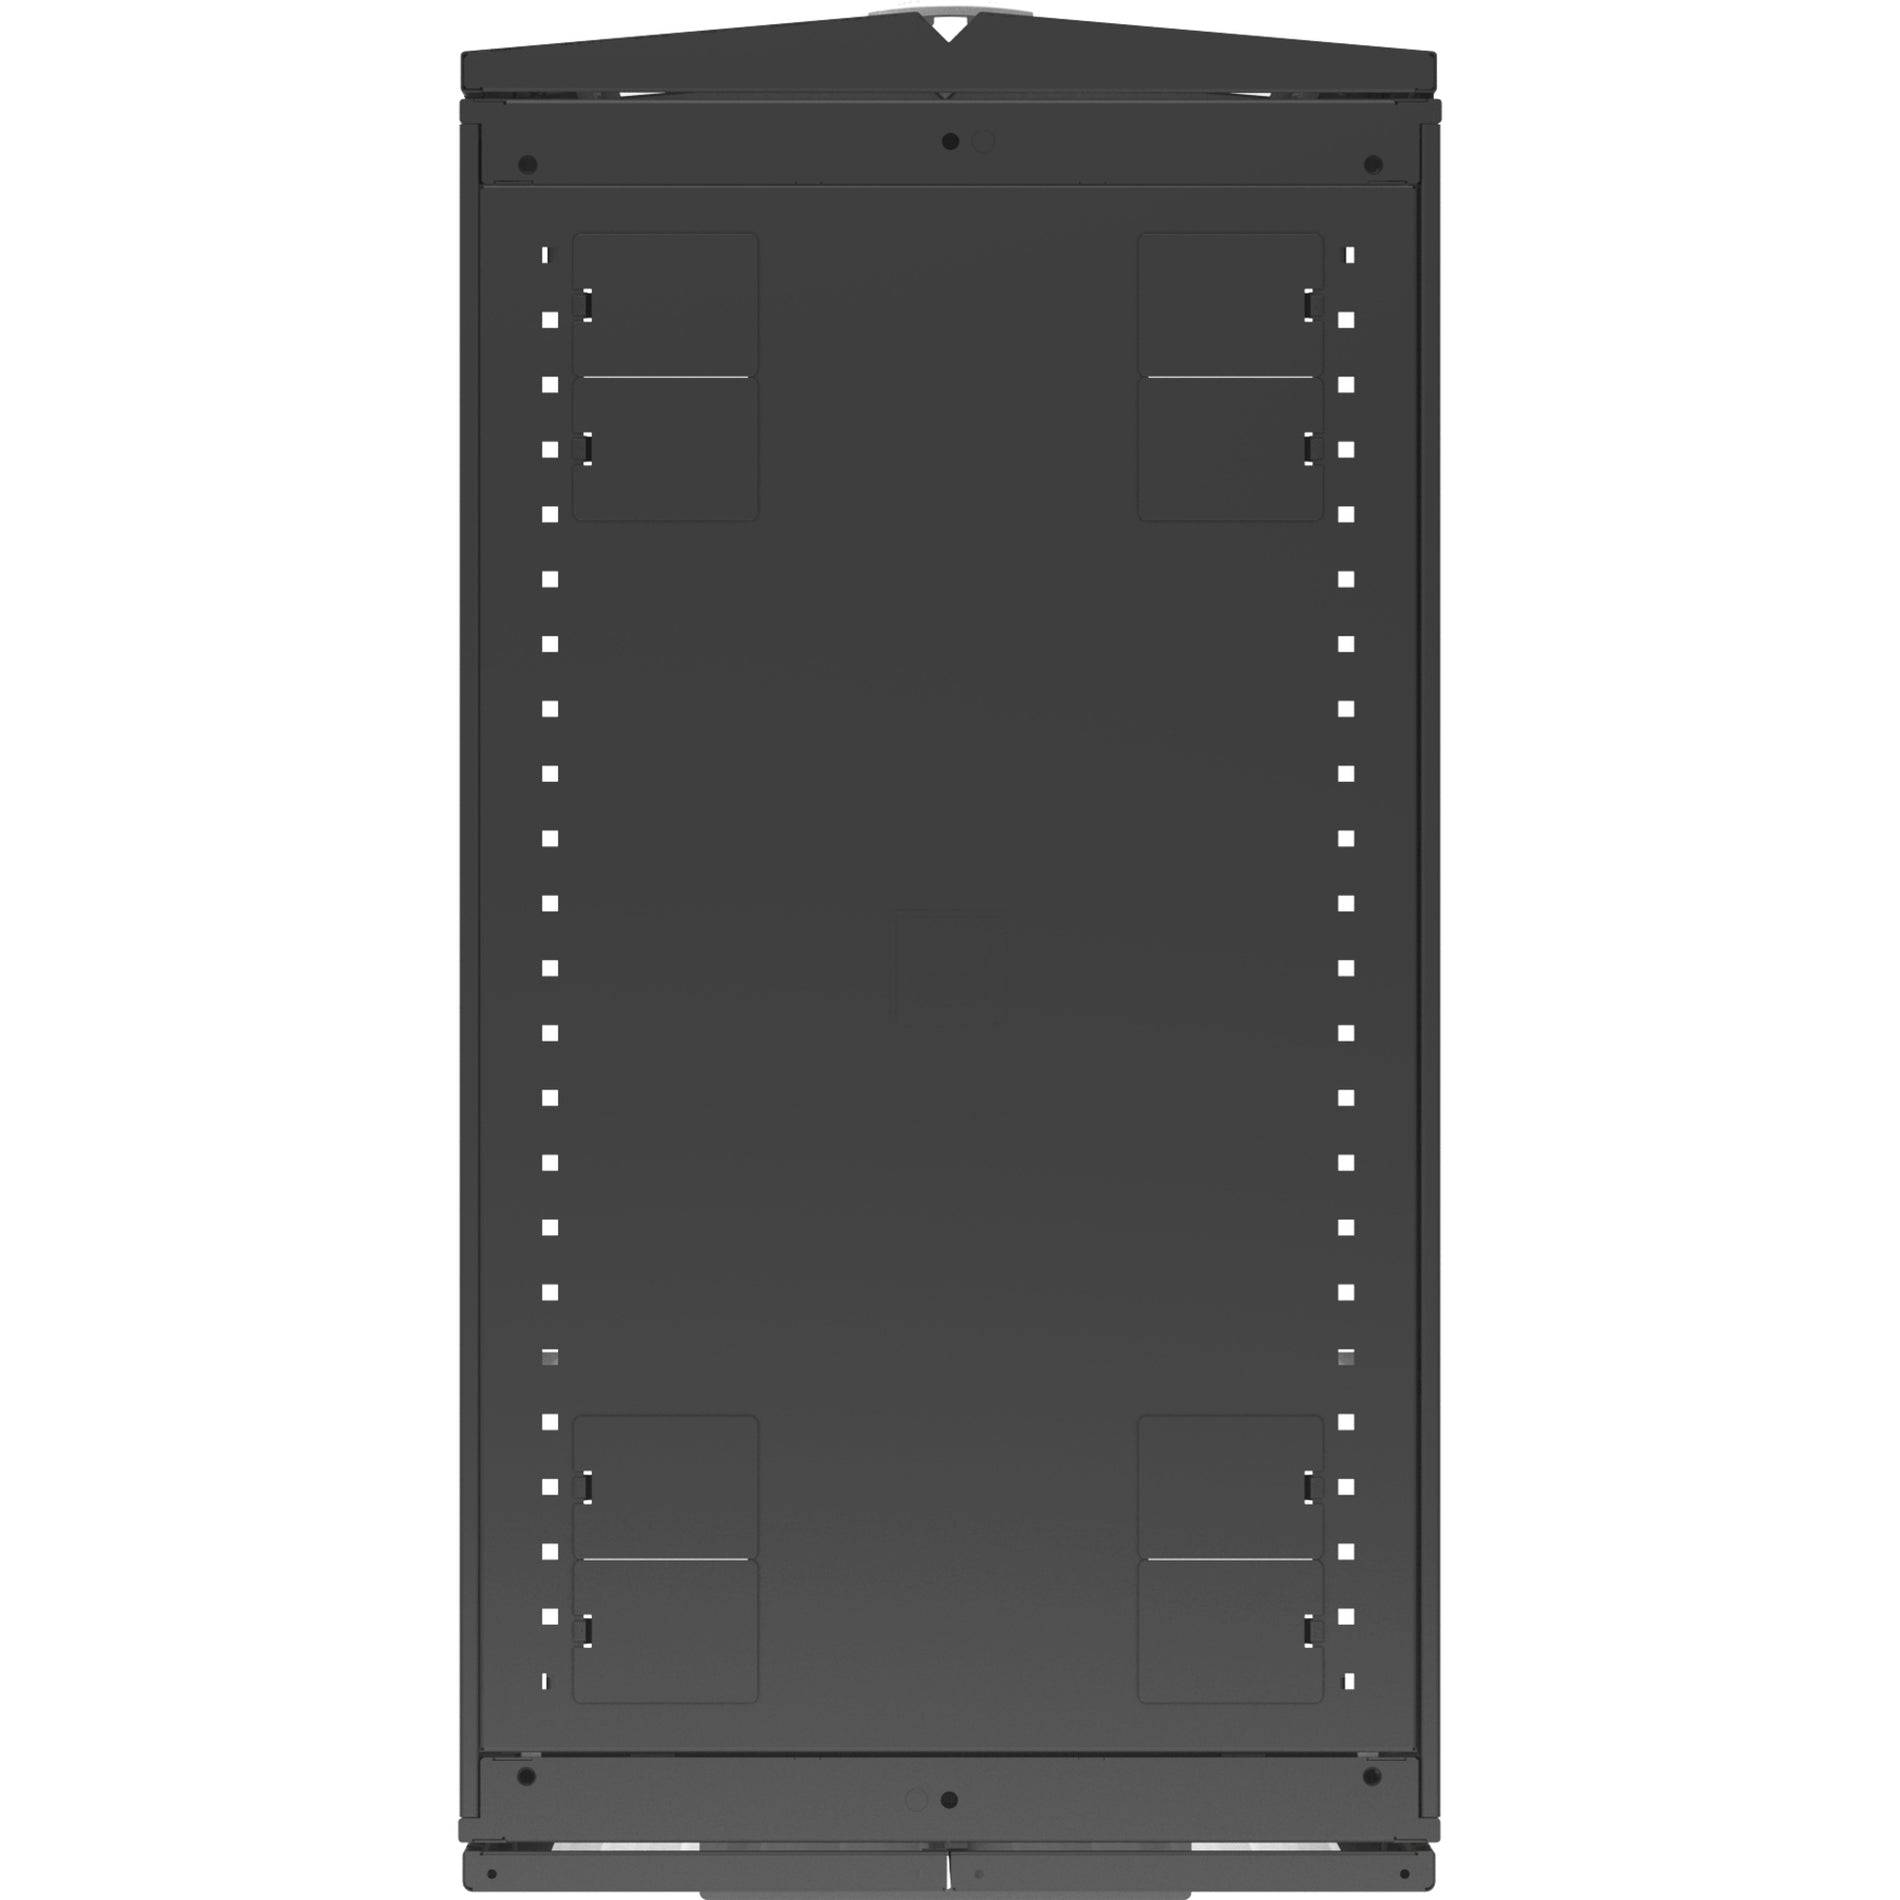 VERTIV VR3107 Vertiv VR Rack - 48U Server Rack Enclosure, 600x1100mm, 19-inch Cabinet